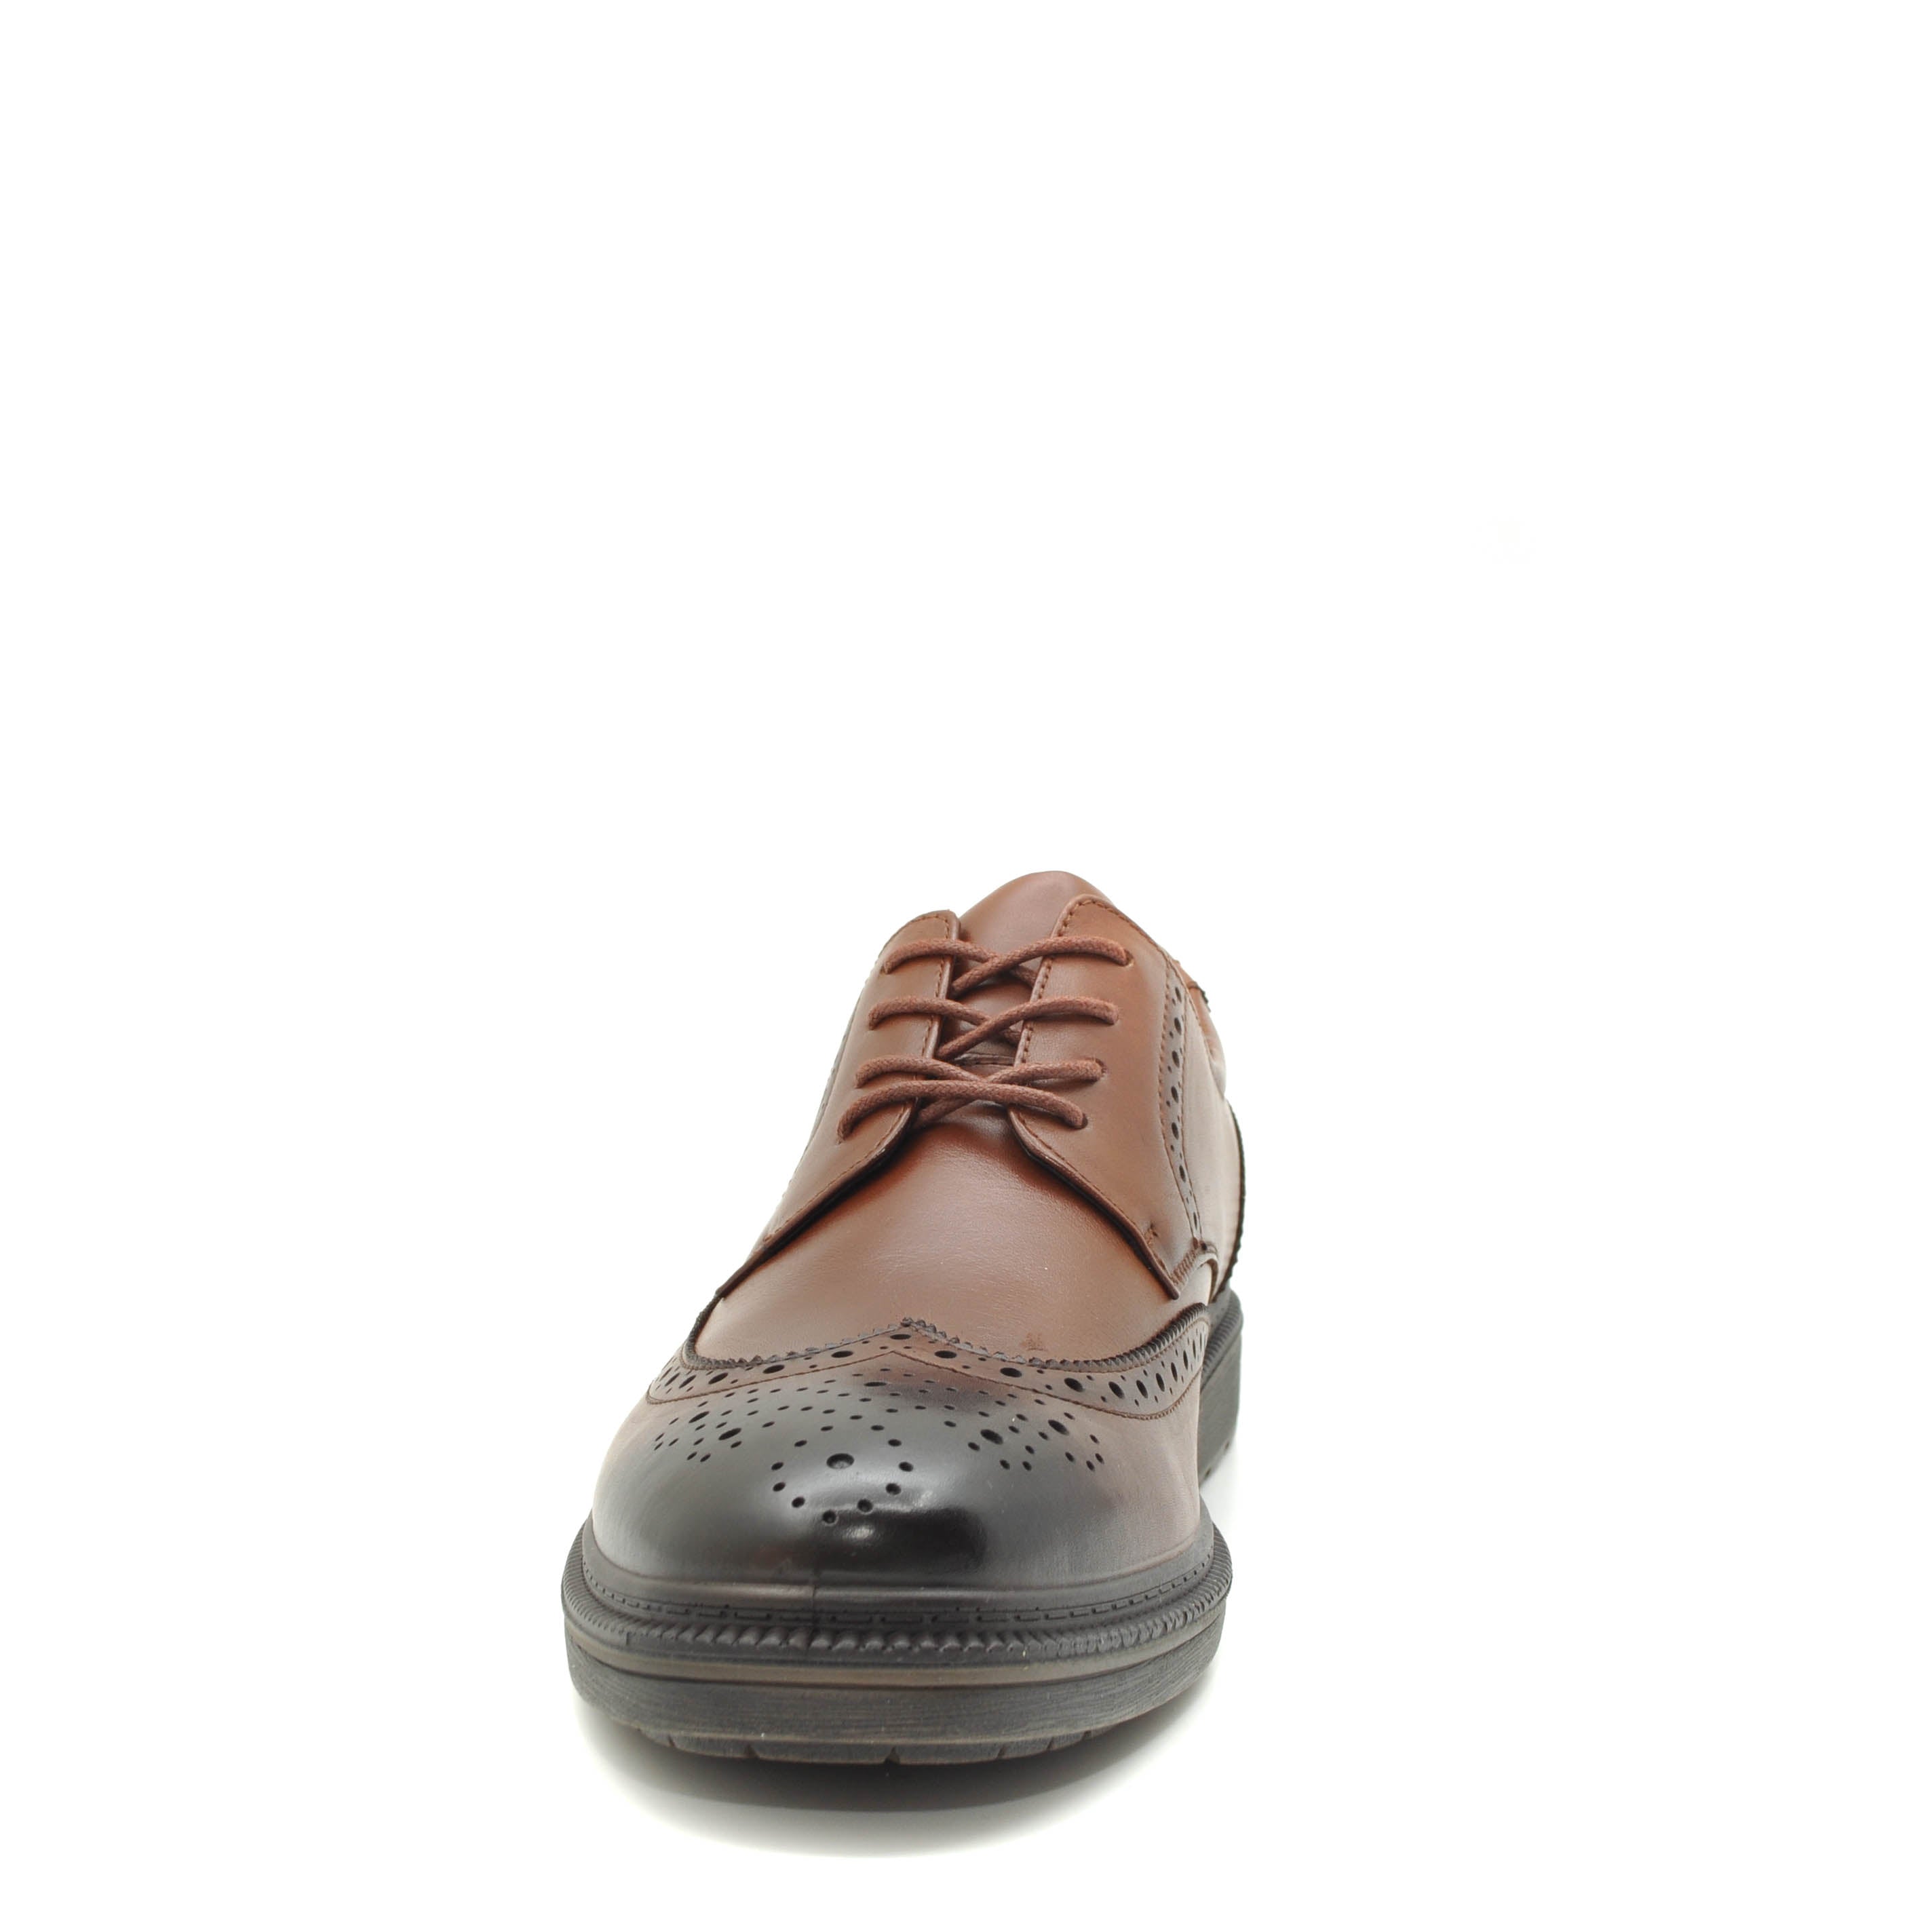 Brown formal shoes for men 